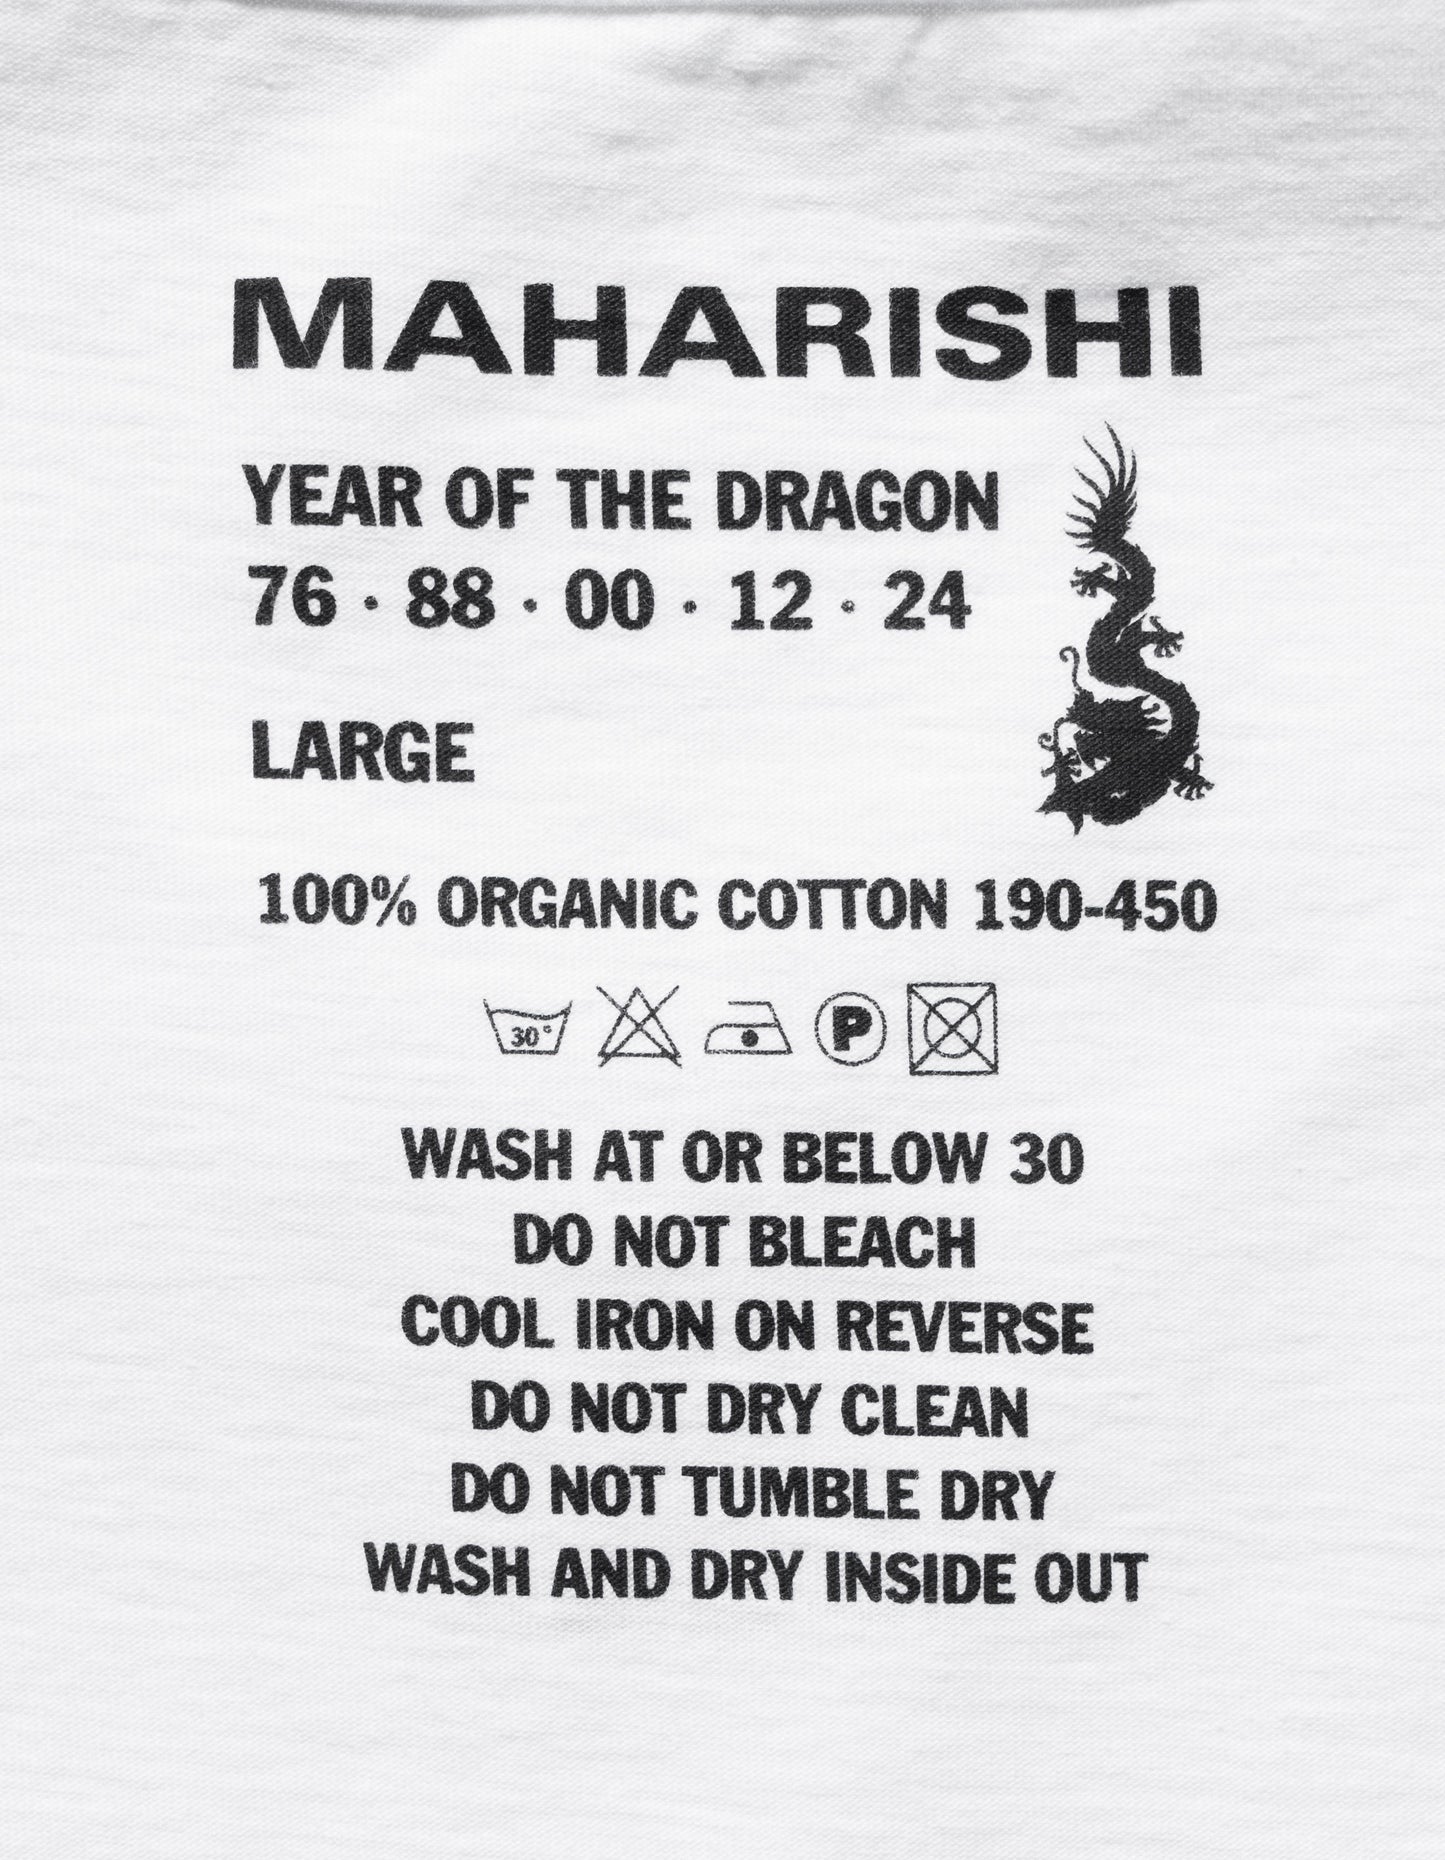 1307 Micro Maharishi T-Shirt White